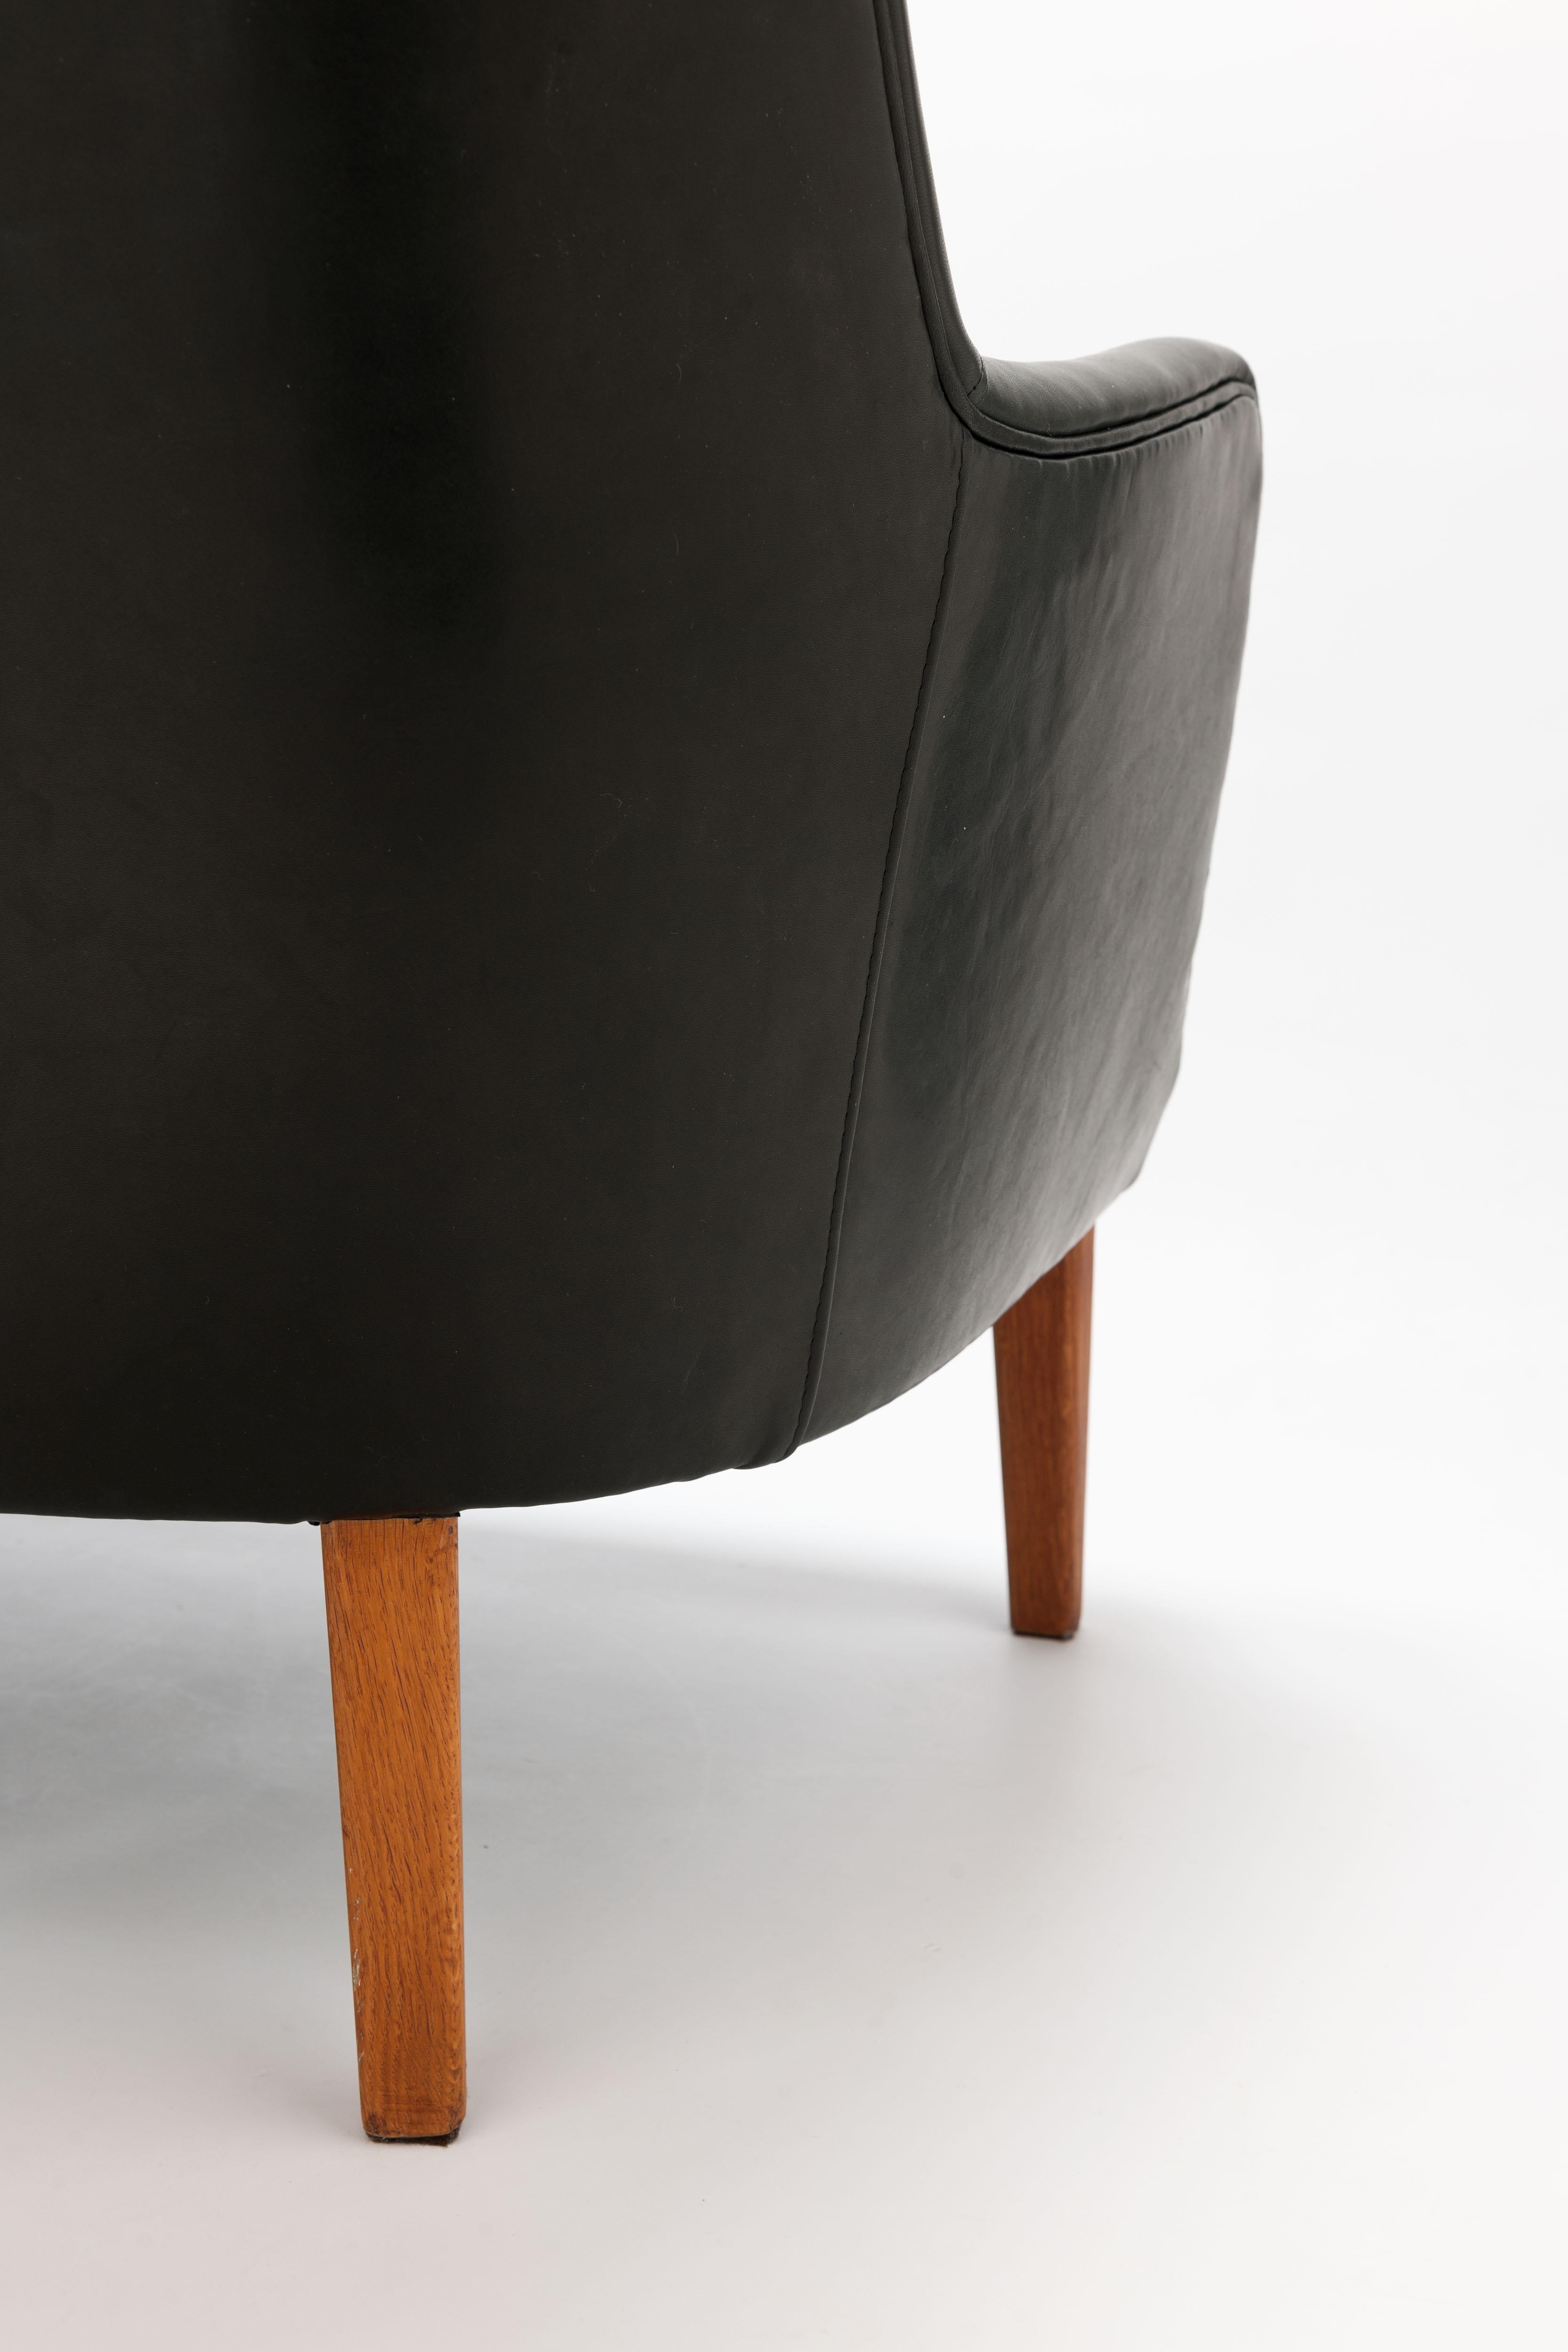 Black Leather Arne Vodder AV53 / 3 Sofa, Ivan Schlechter, Denmark 6